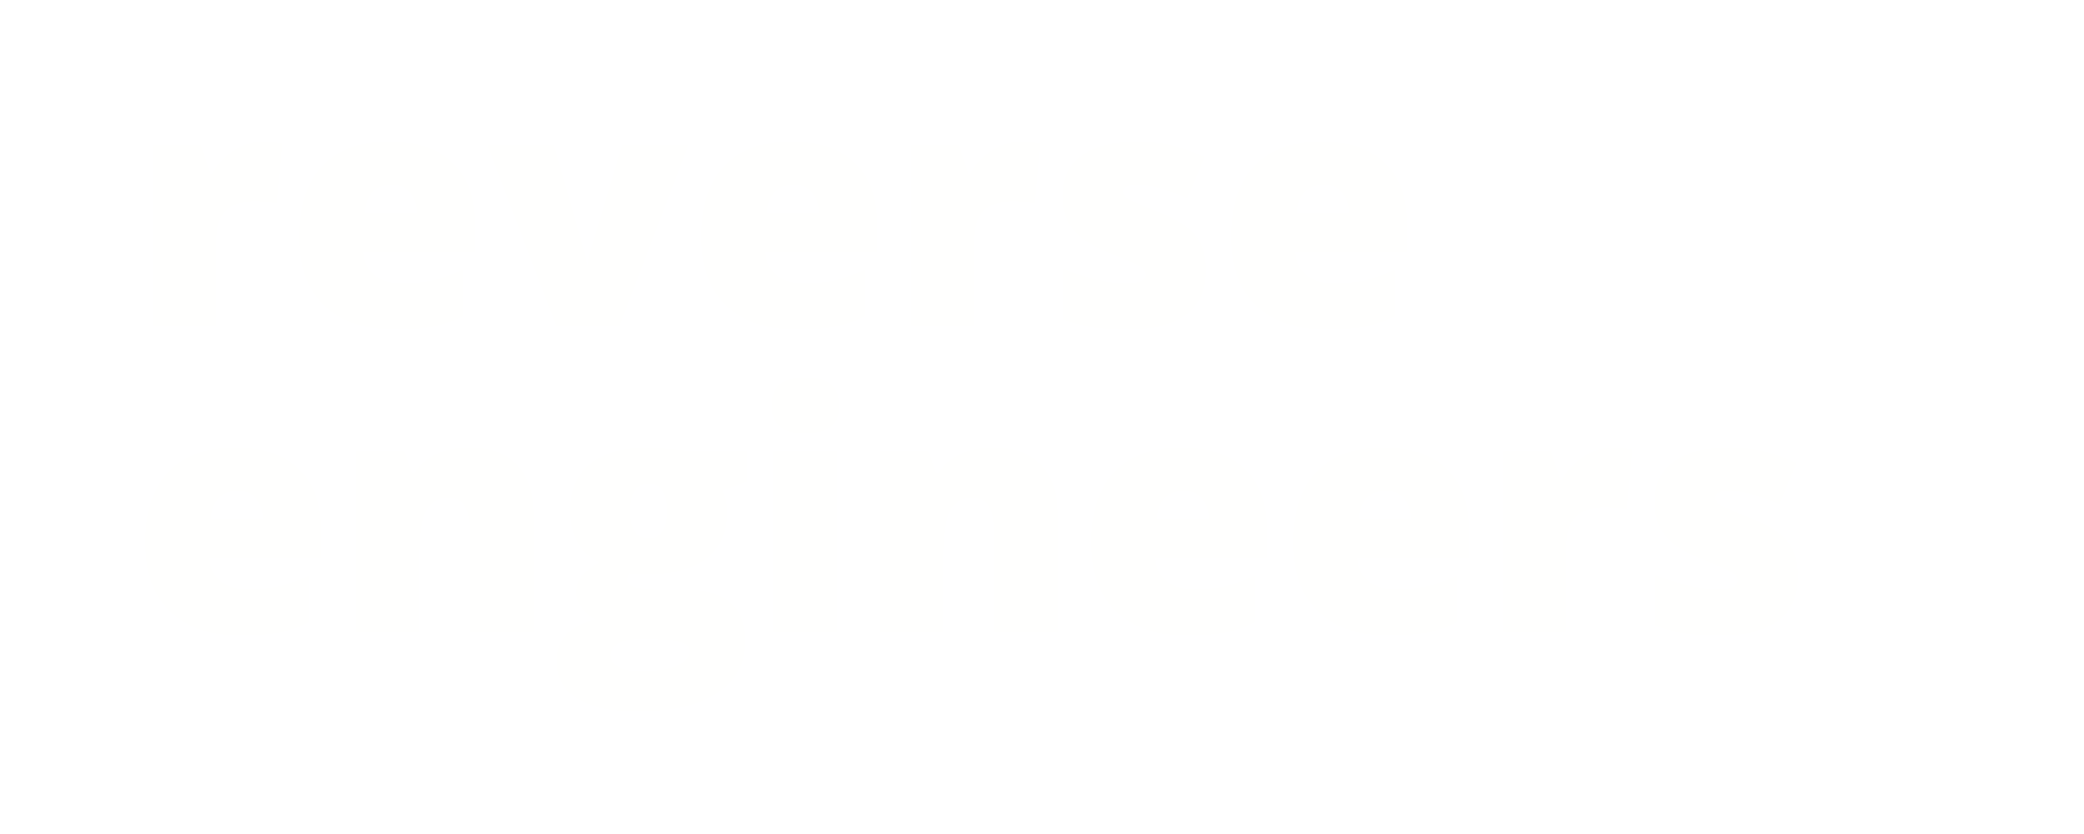 Reverse Engineers